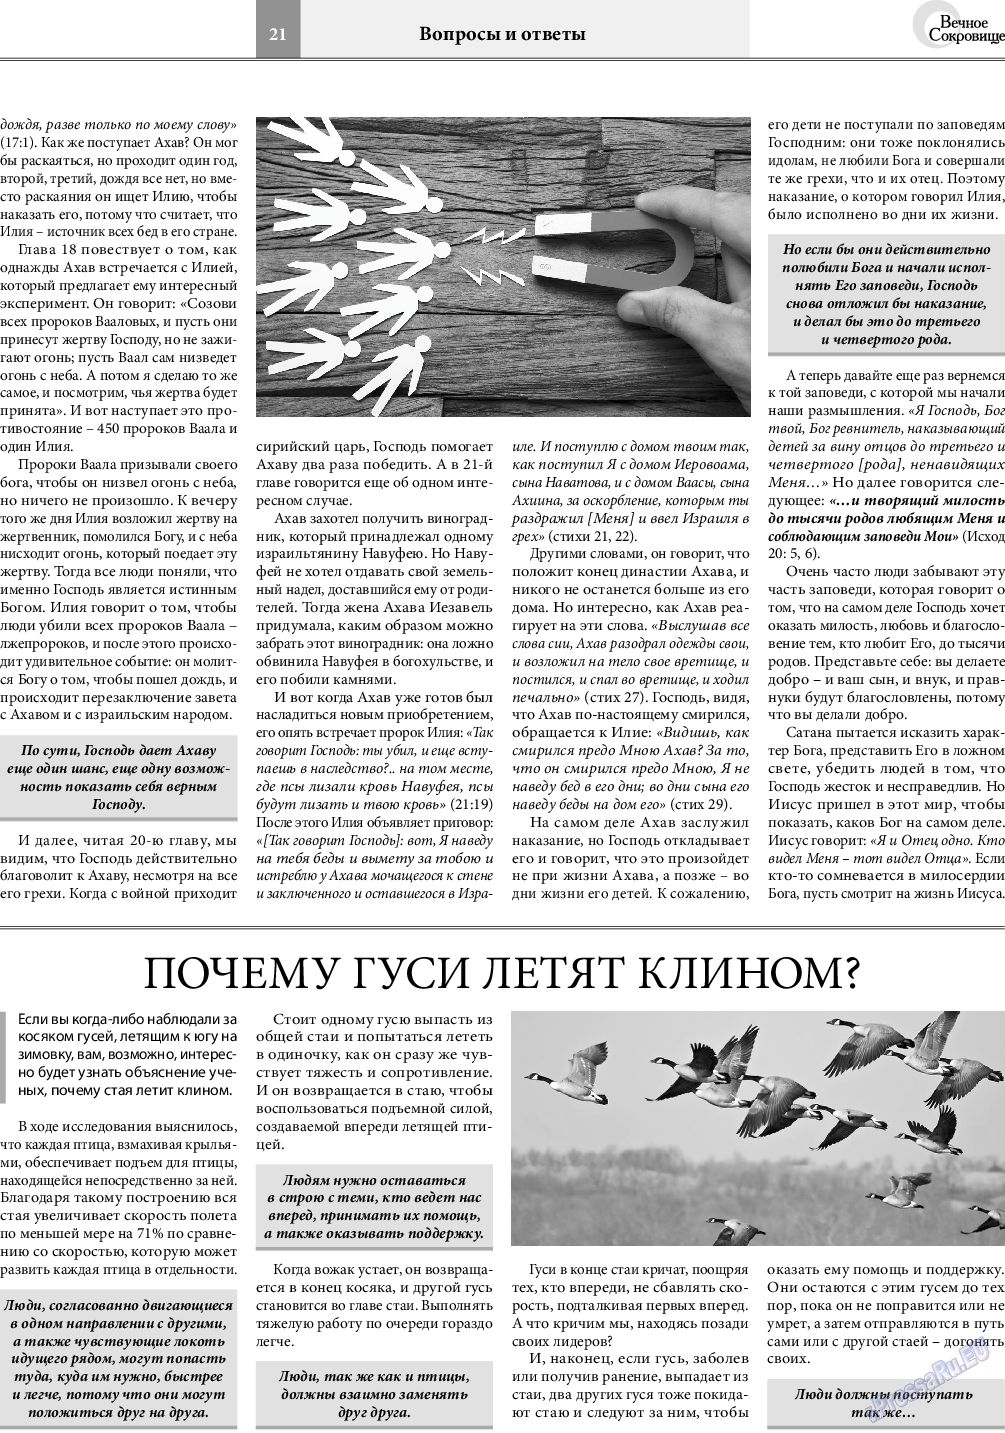 Вечное сокровище, газета. 2019 №6 стр.21